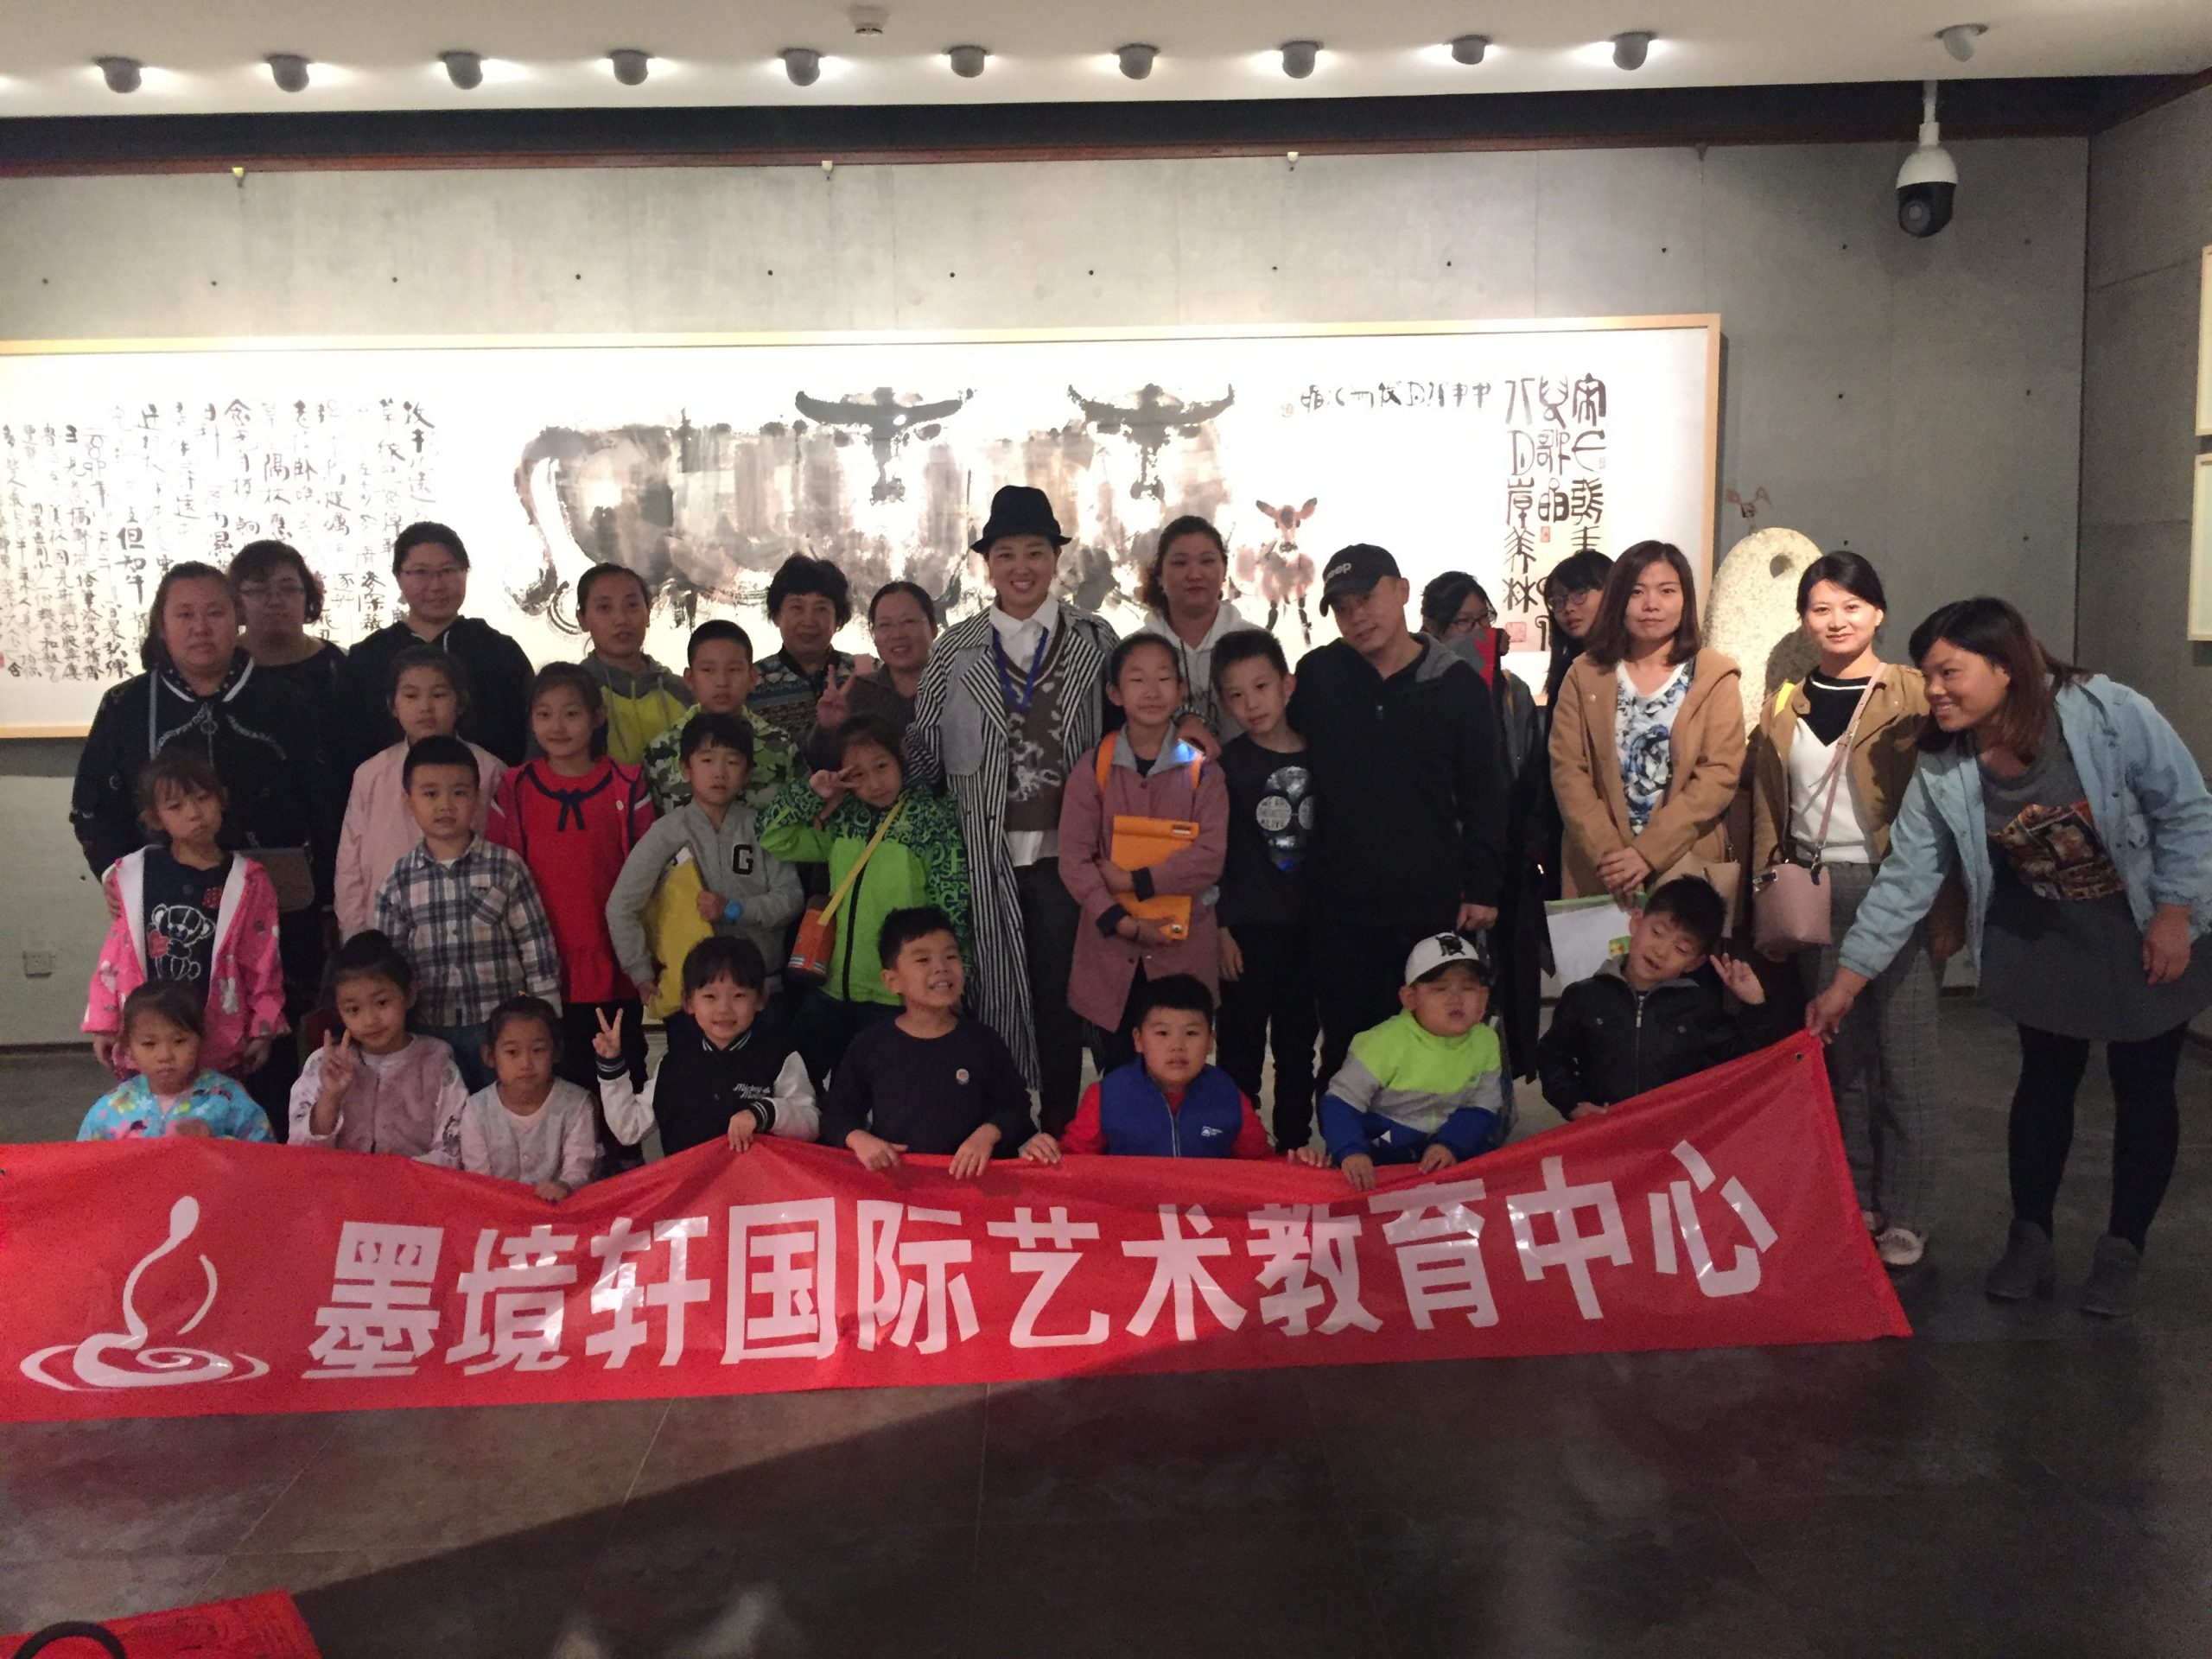 【2018年9月】墨境轩组织学生走进韩美林美术馆 活动 第1张